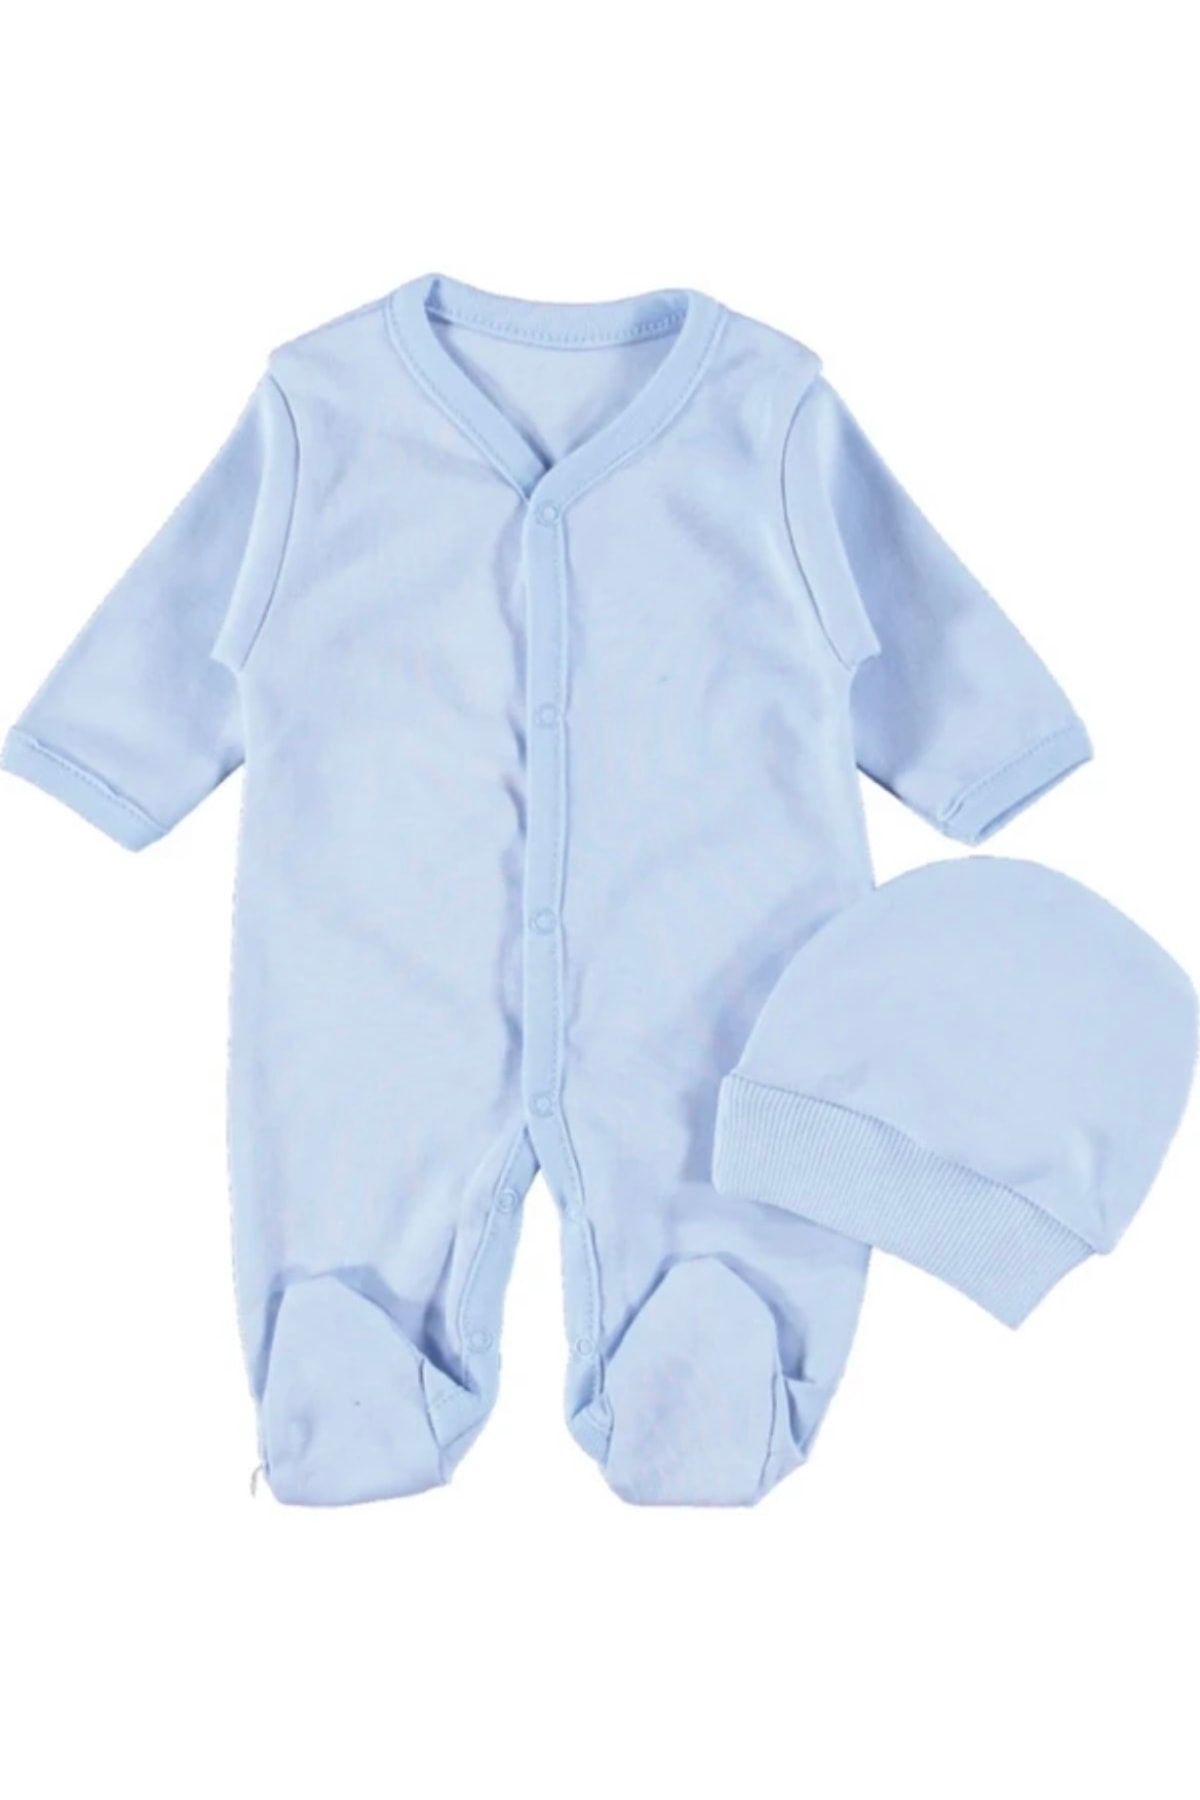 Seçkin Baby Yeni Doğan Şapkalı Eldivenli Düz Erkek Bebek Tulum